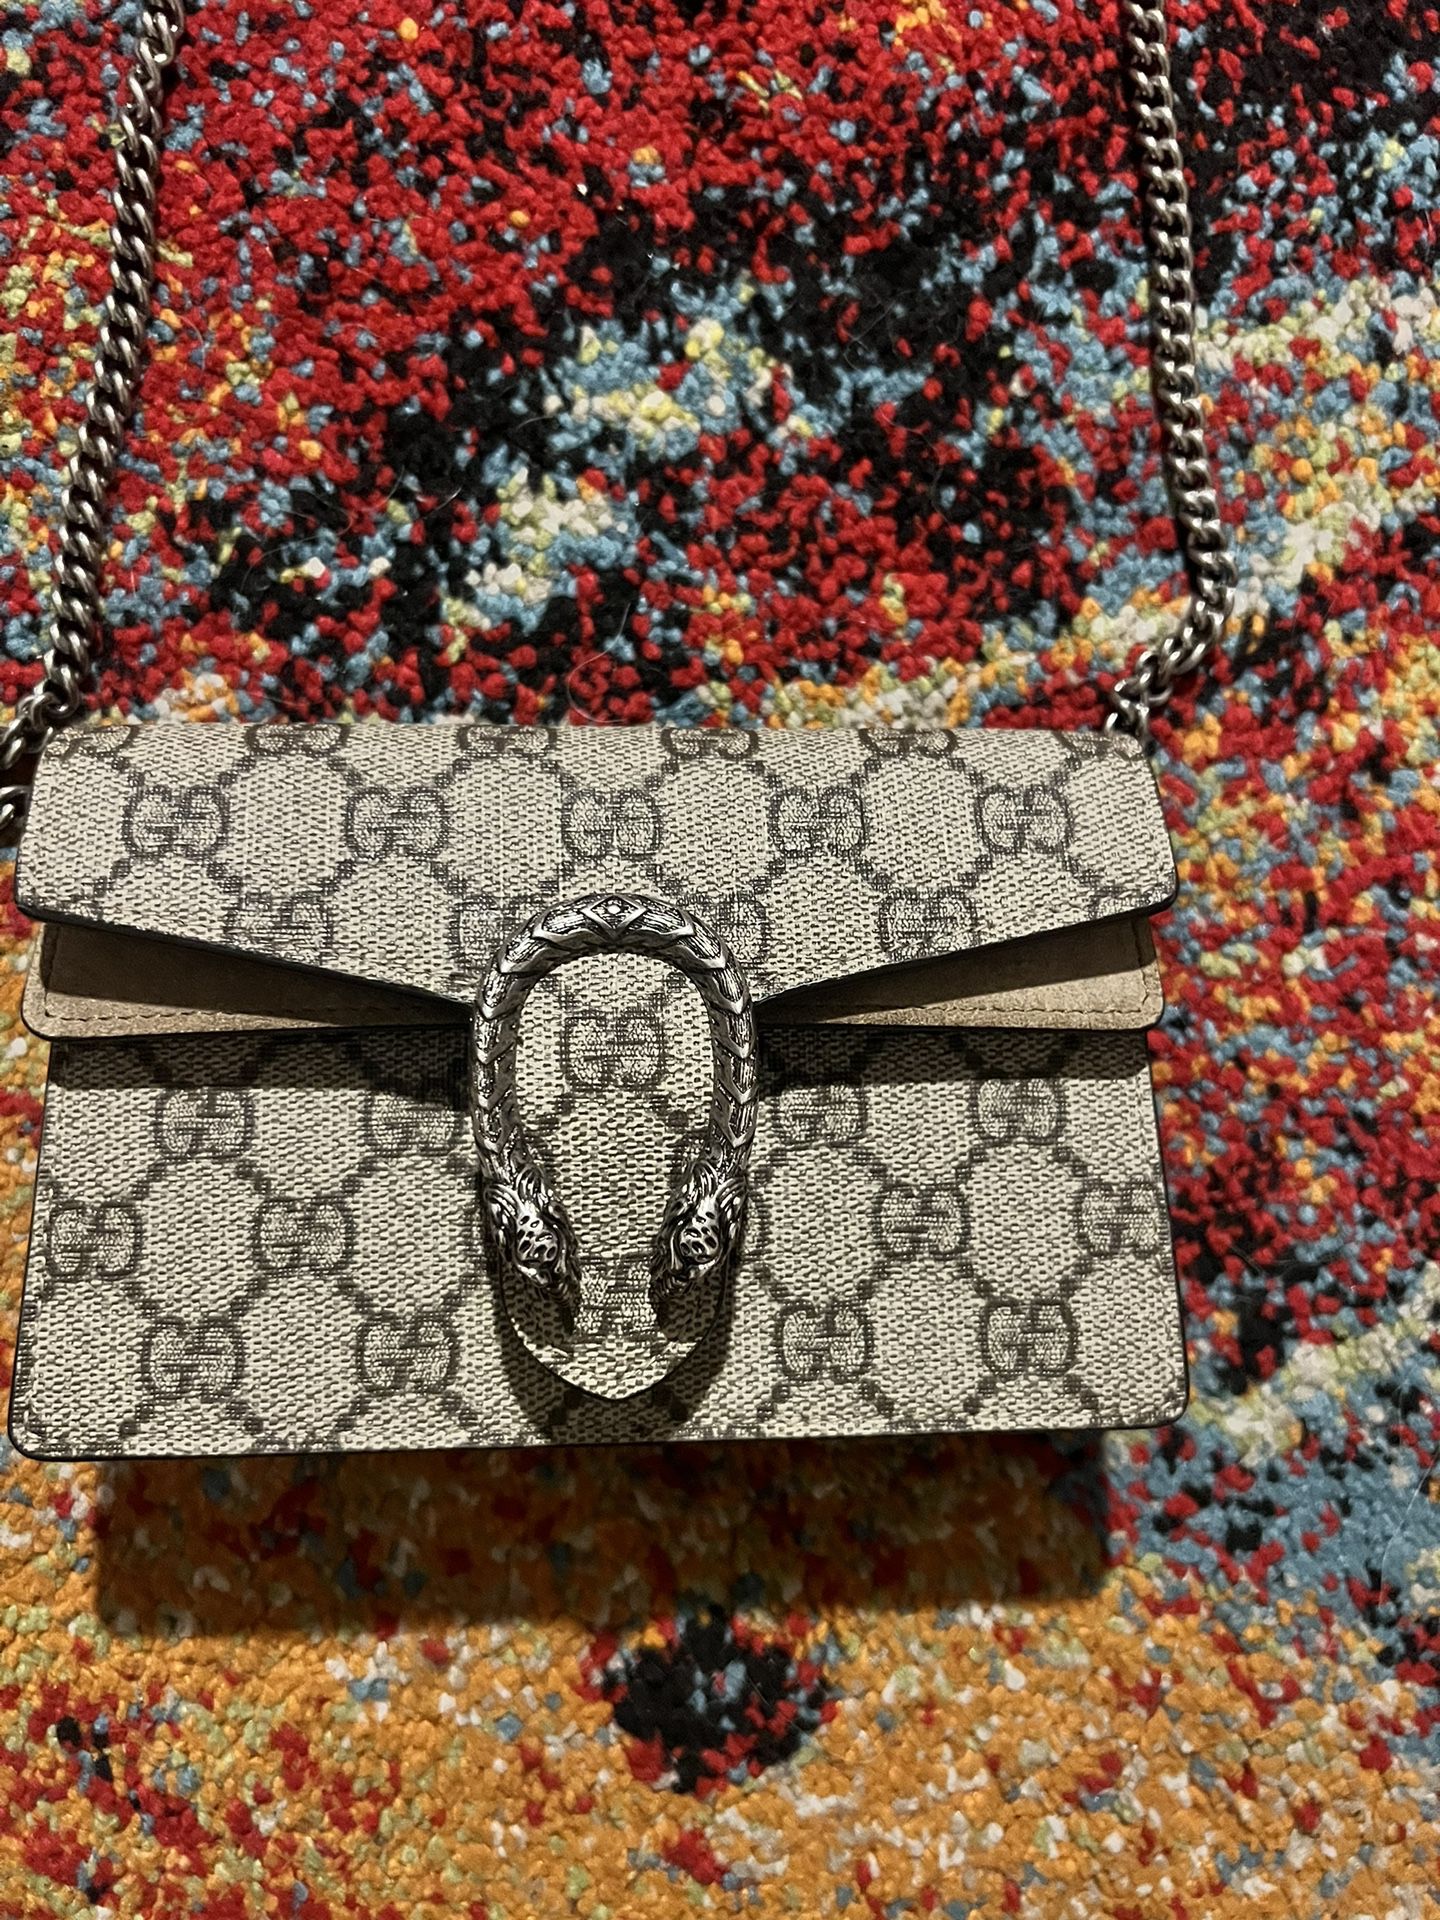 Preloved Gucci Dionysus GG Supreme Super Mini Chain Wallet